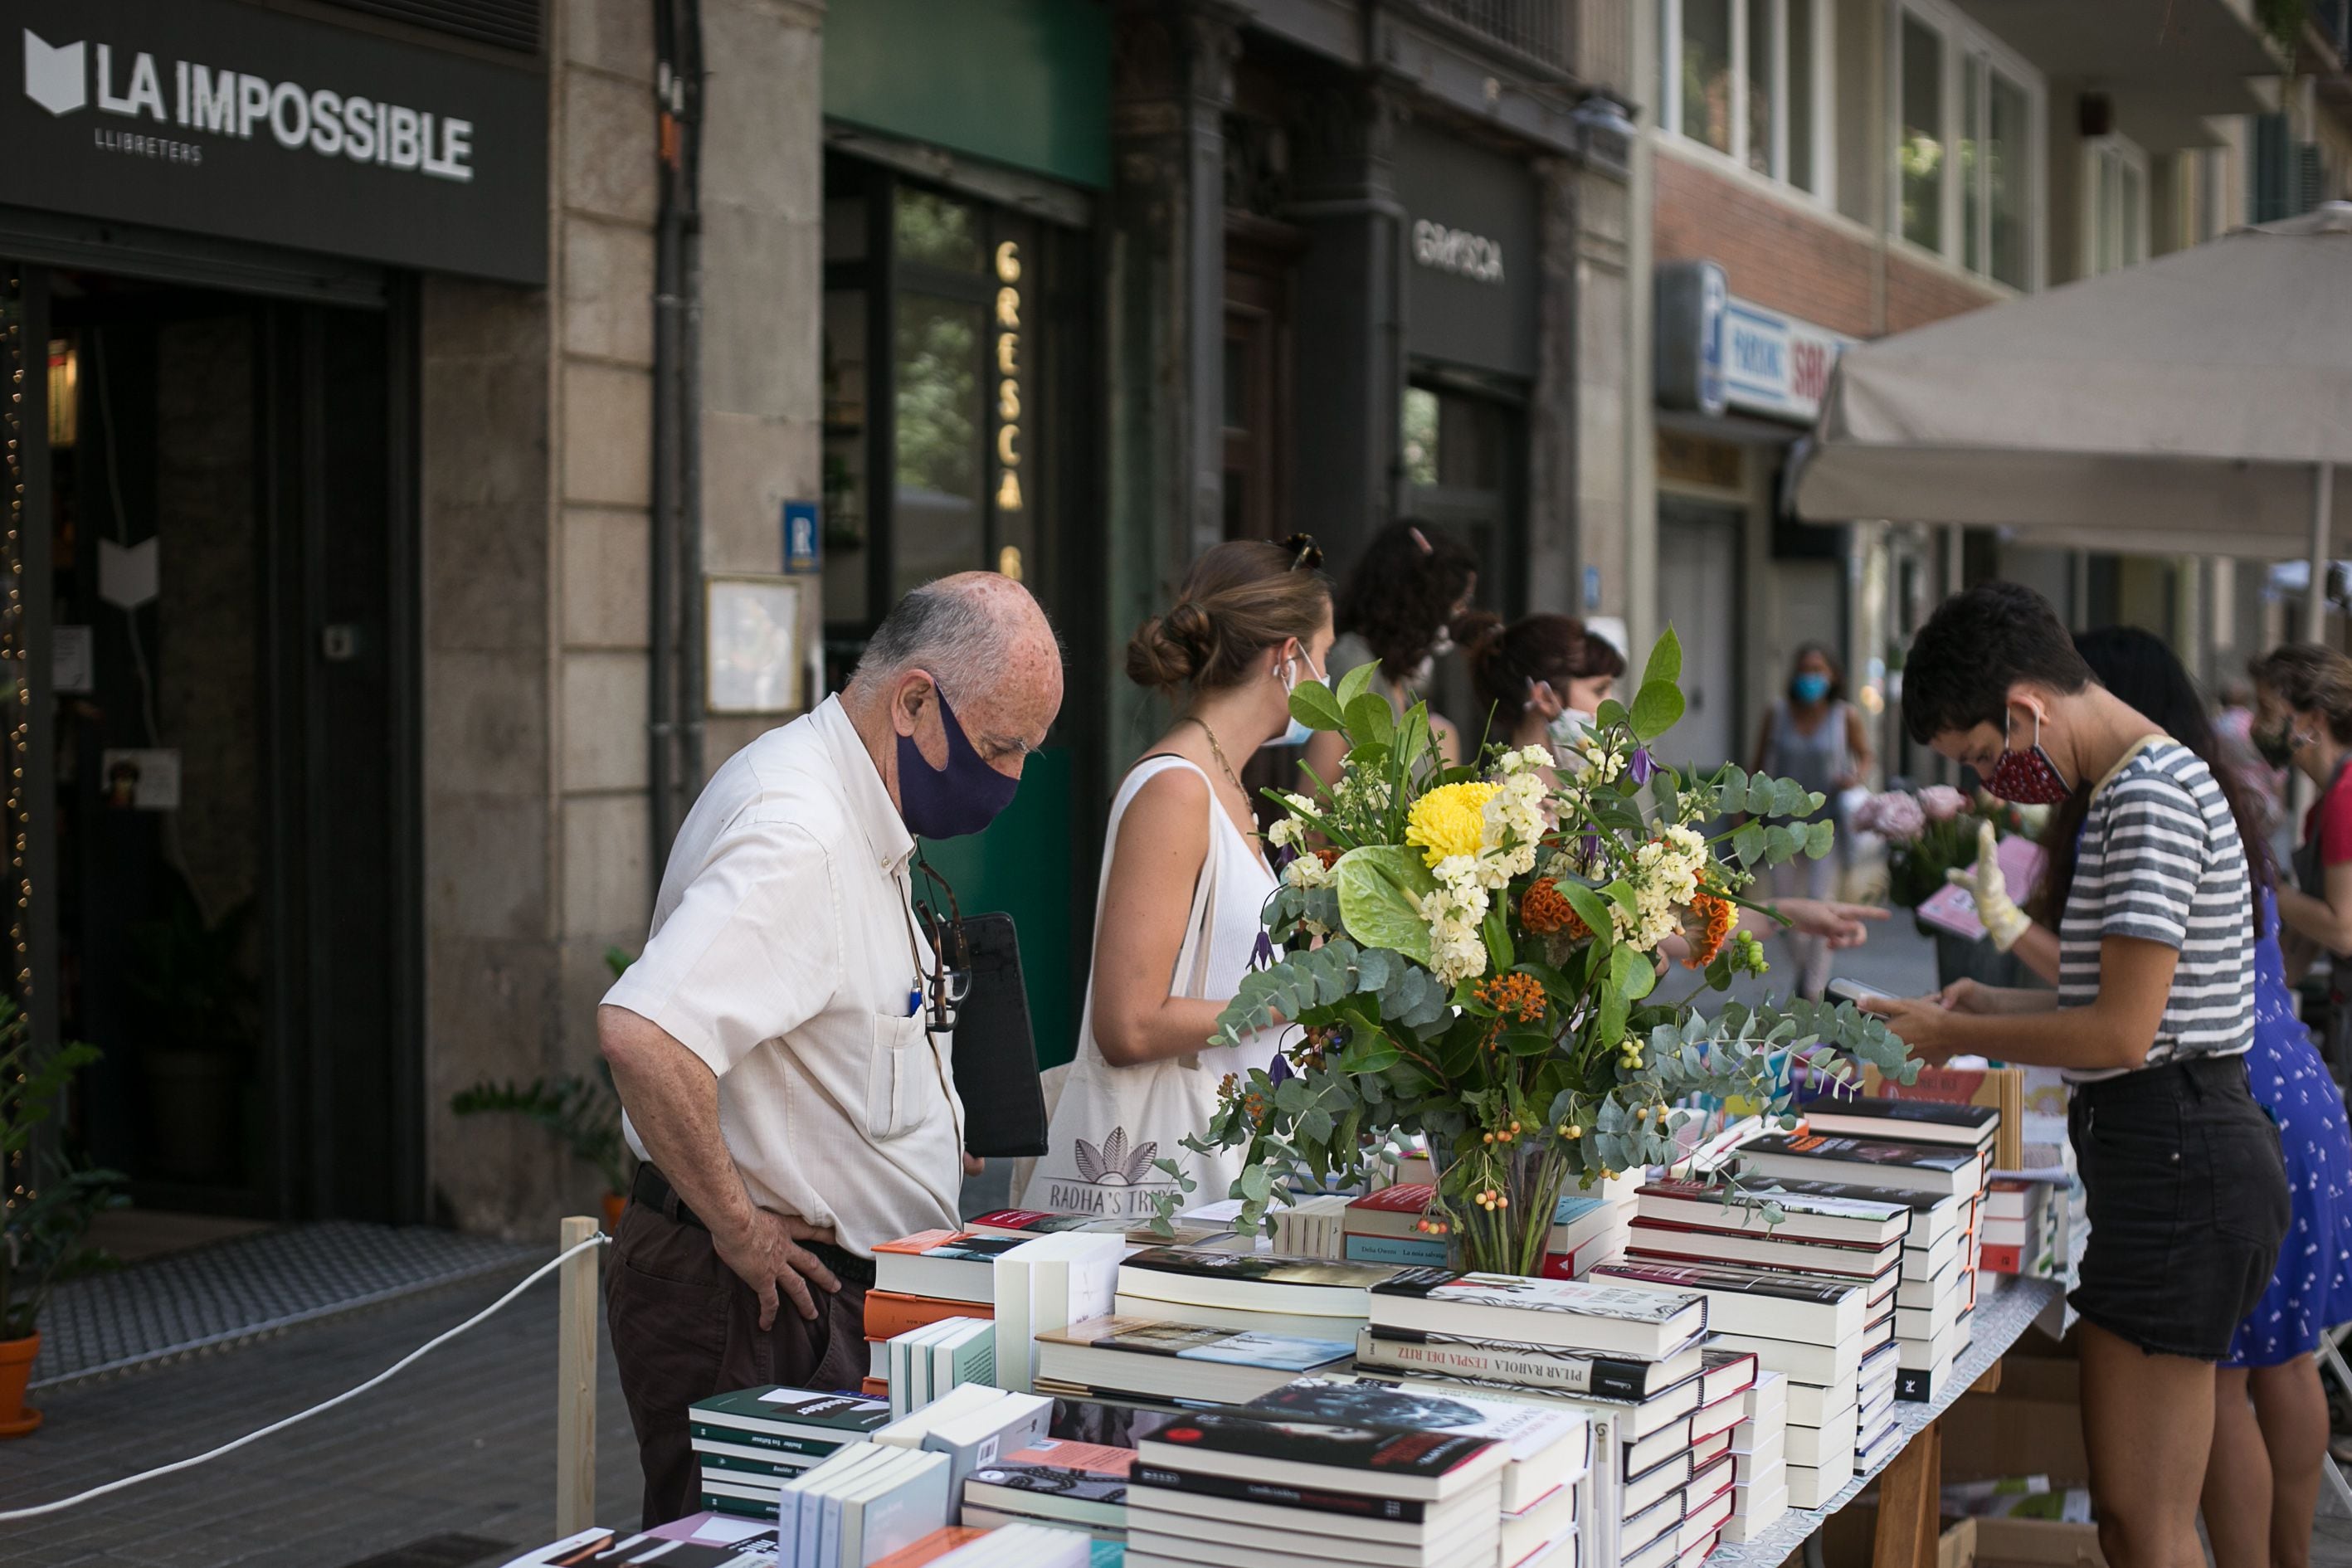 Em Barcelona, compradores em uma banca de livros e flores, nesta quinta-feira. Catalunha é uma das regiões mais afetadas por segunda onda do coronavírus.